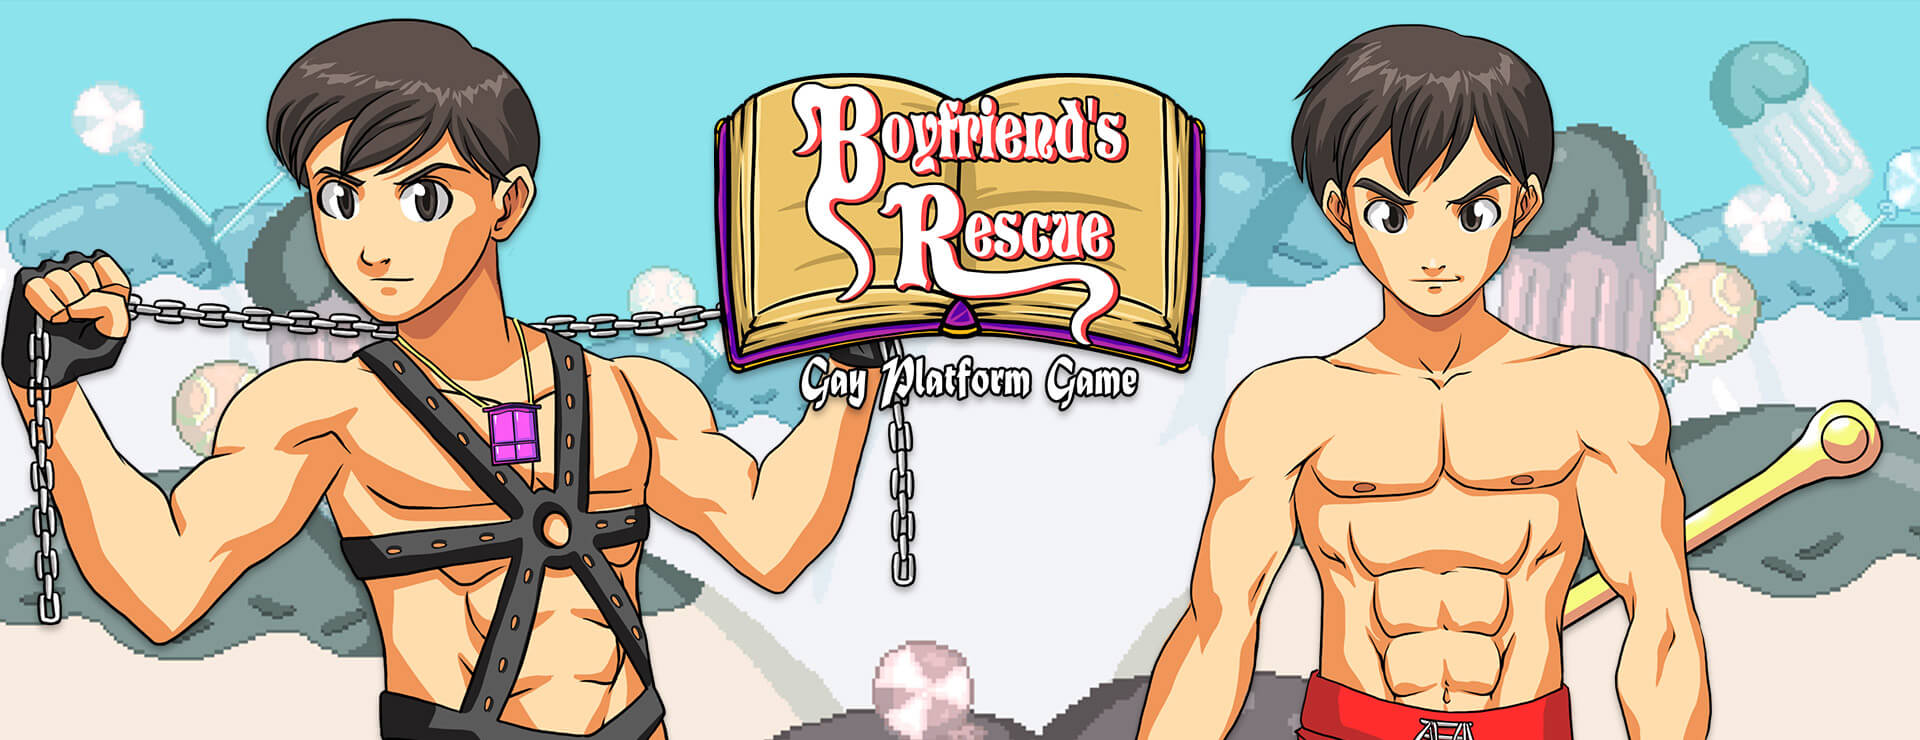 Boyfriend's Rescue - Action Adventure Game